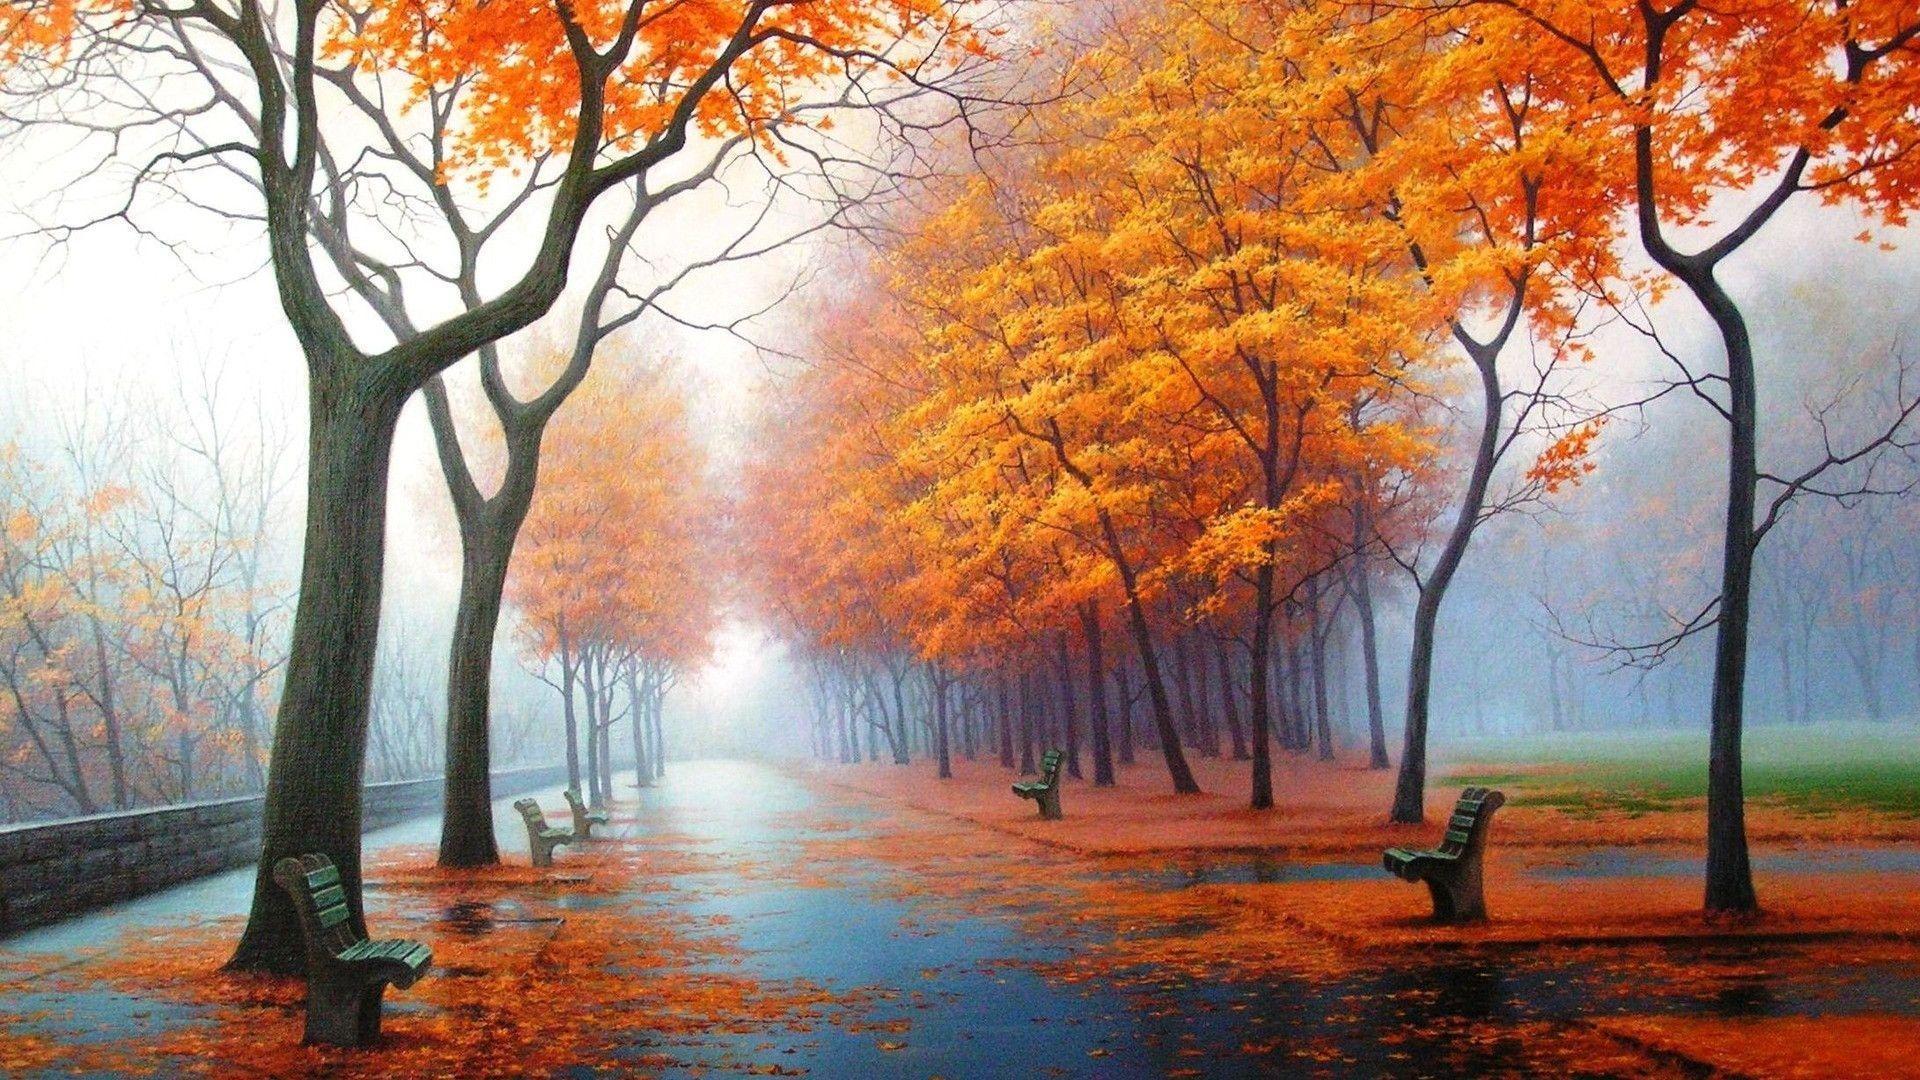 雨上がりの秋の風景 スマホの待ち受け画面やpcの壁紙に使える秋の無料画像 Naver まとめ